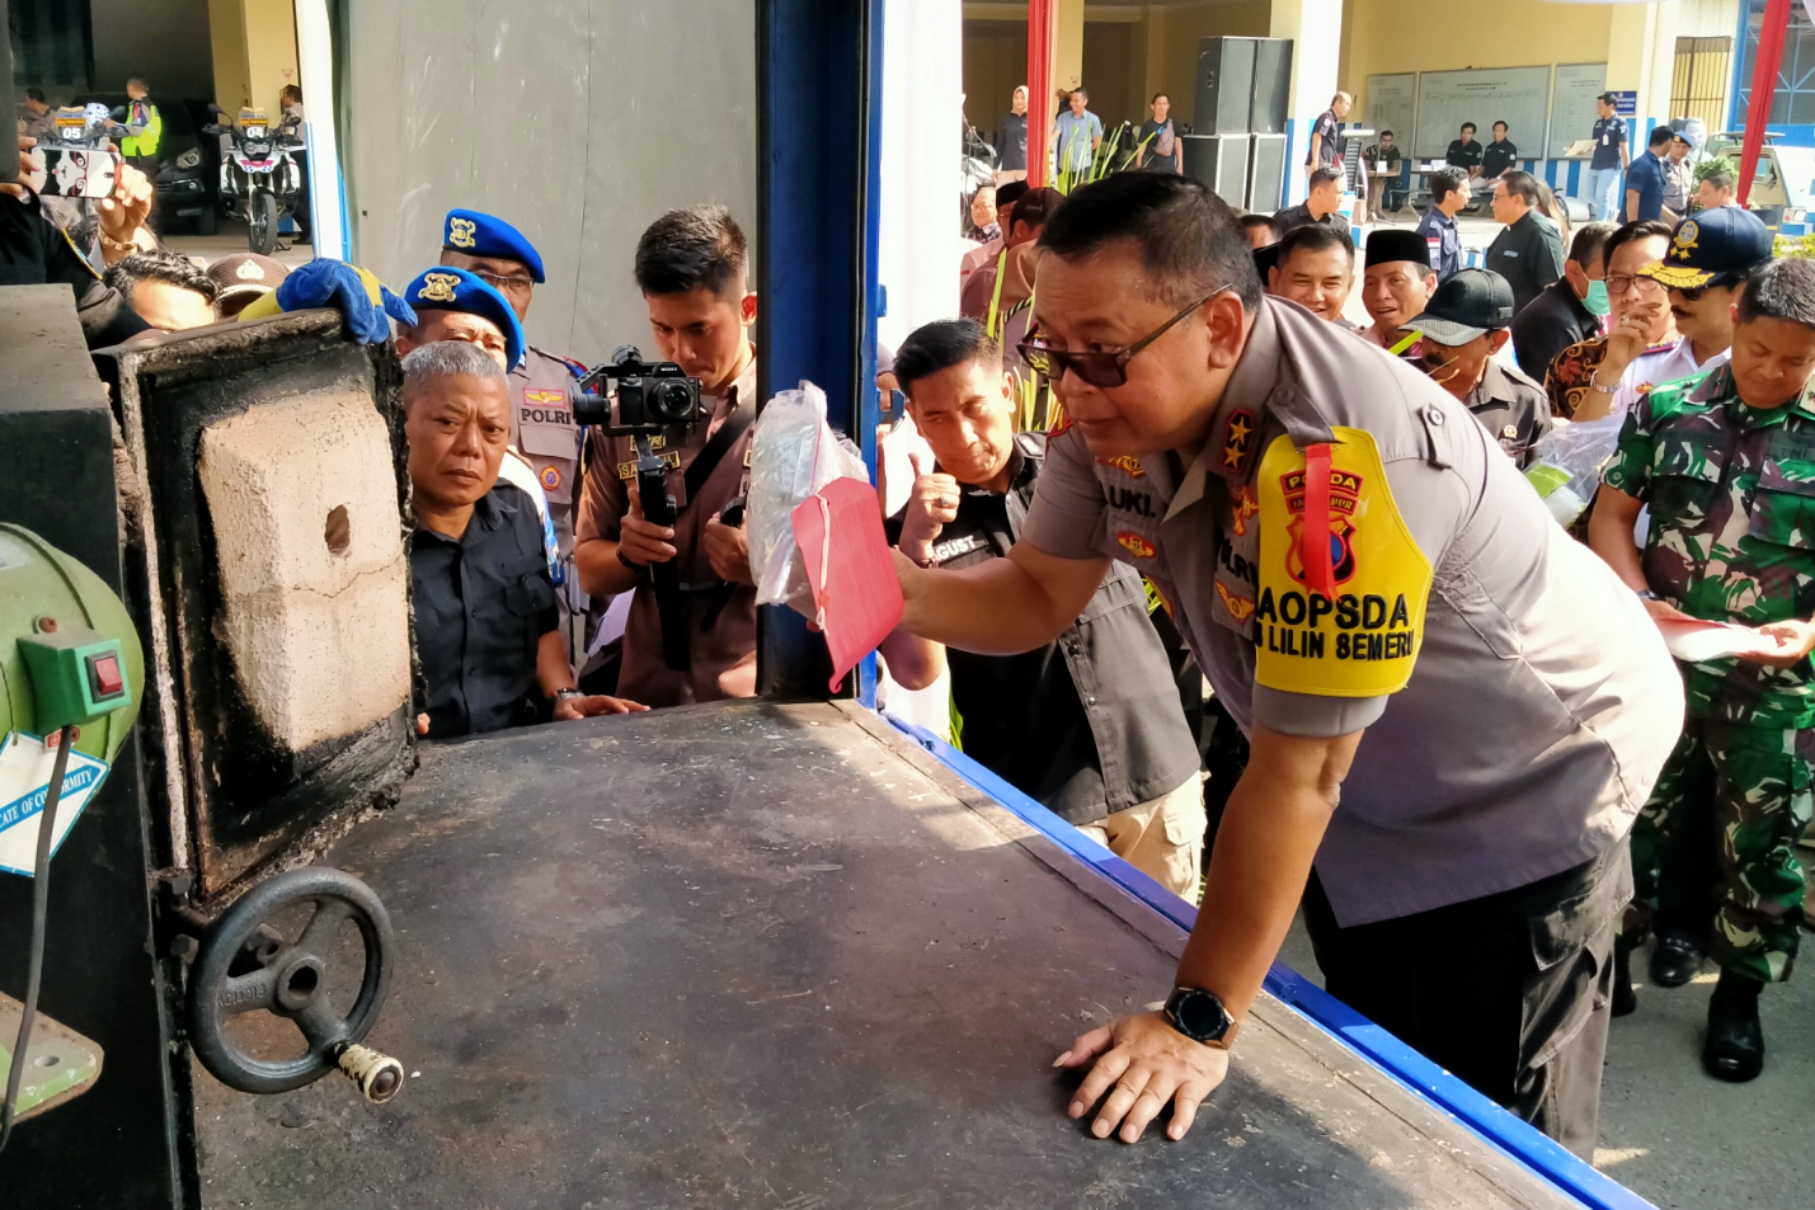 Kapolda Jatim, Irjen Pol Luki Hermawan saat memasukkan barang bukti sabu-sabu ke dalam mesin pembakar di Gedung Polda Jatim, Surabaya, Kamis 19 Desember 2019. (Foto: Fariz/ngopibareng.id)